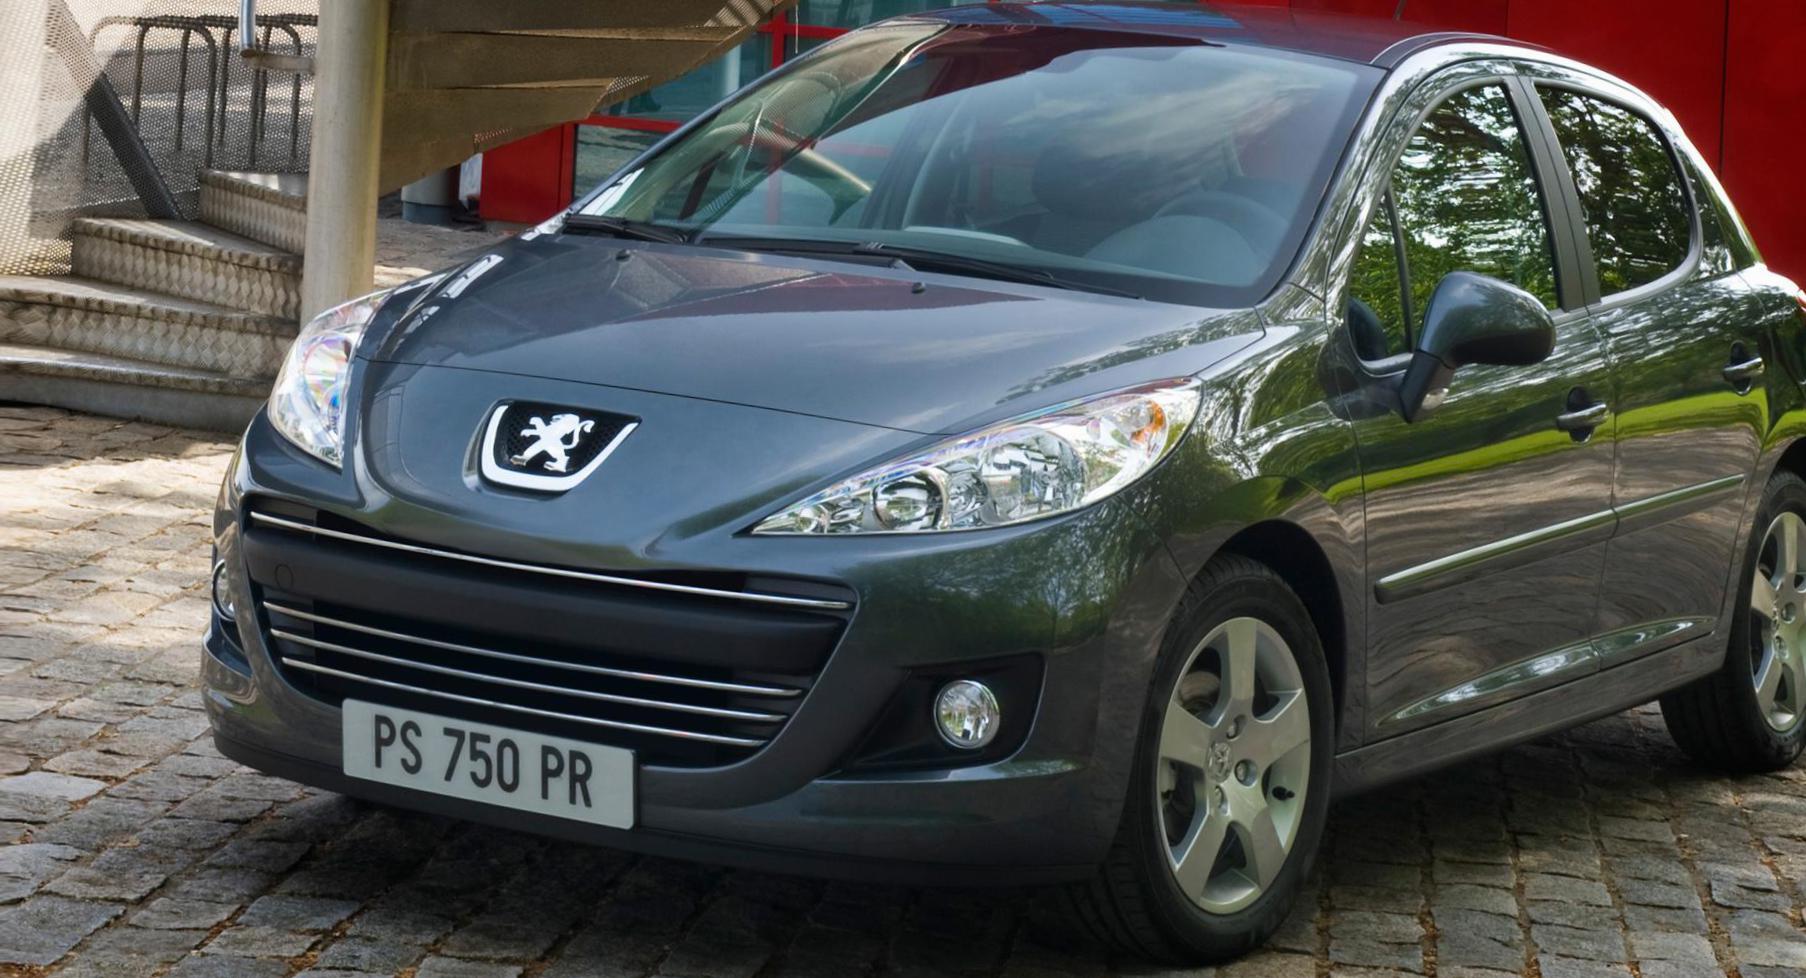 207 CC Peugeot Characteristics van